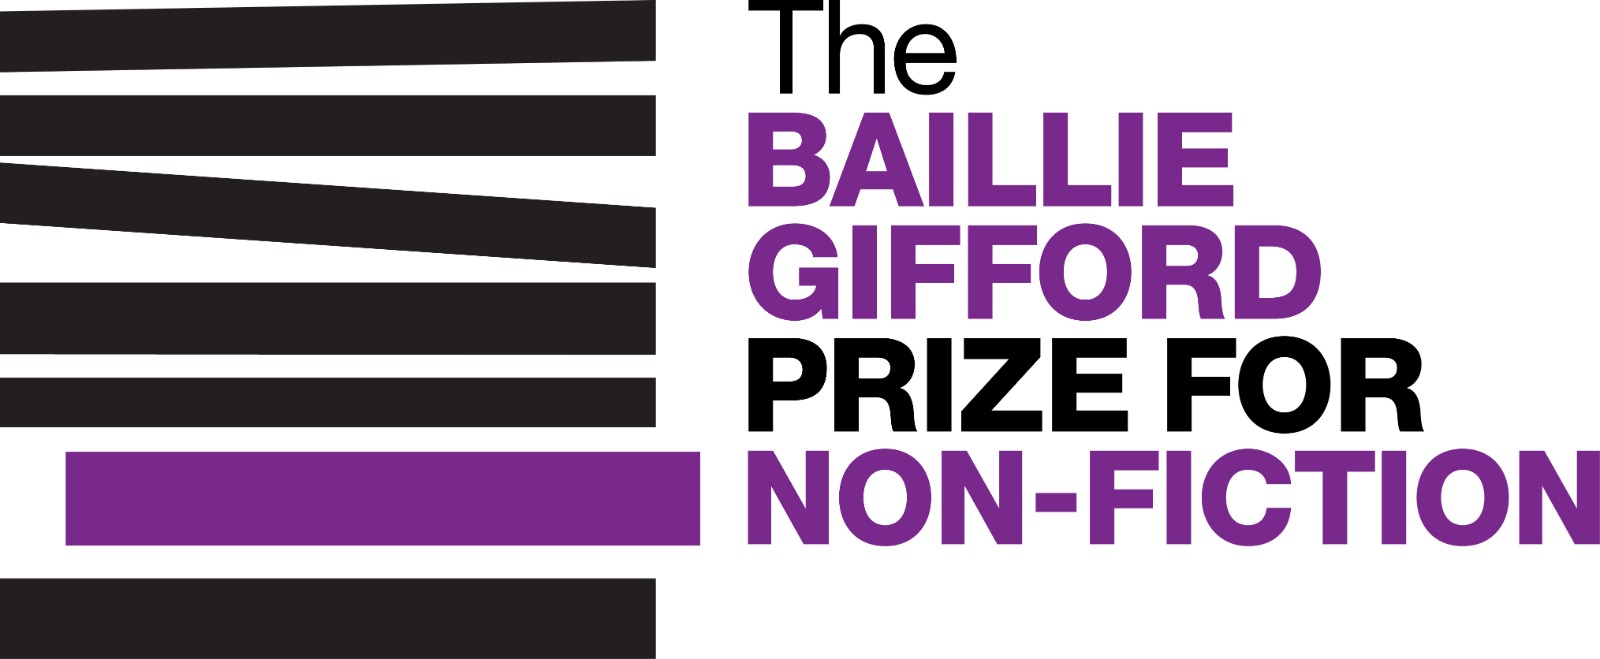 نامزدهای اولیه جایزه بیلی جیفورد 2021 اعلام شد